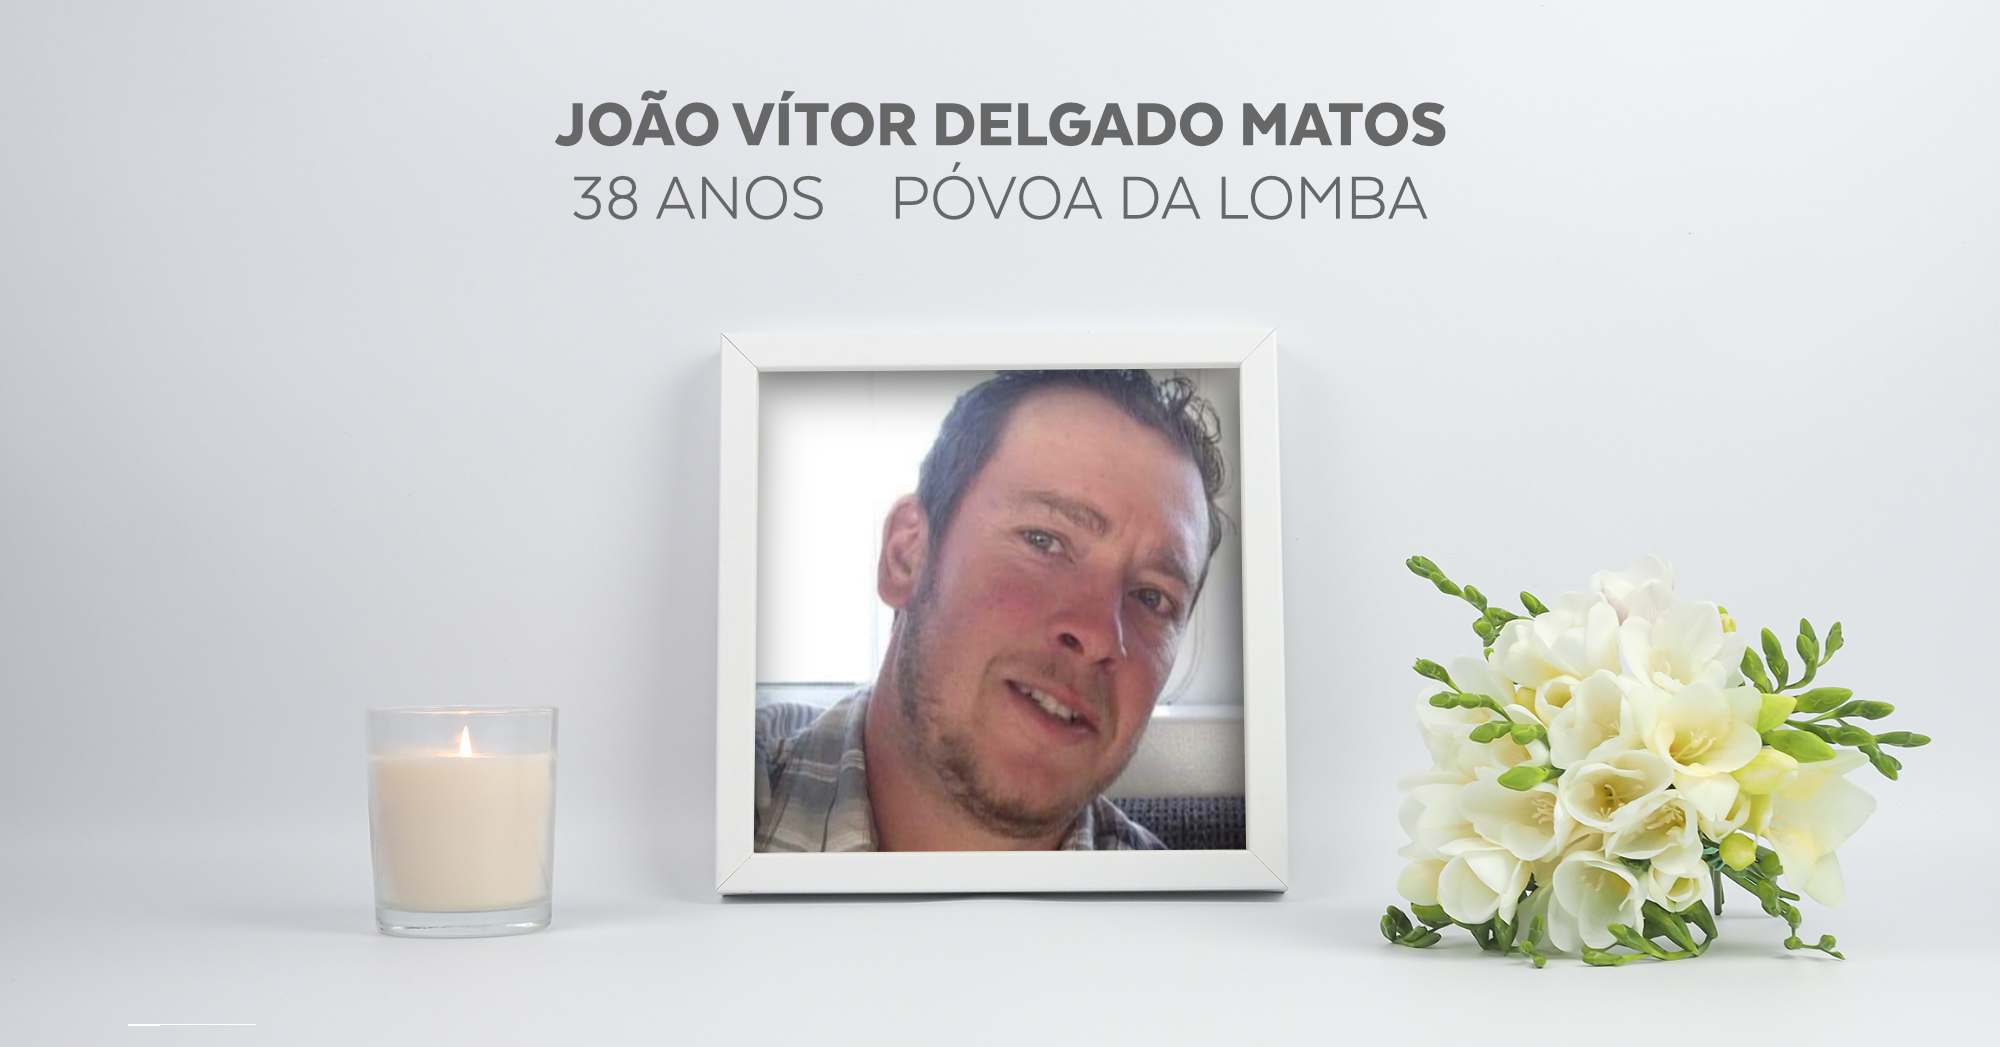 João Vítor Delgado Matos